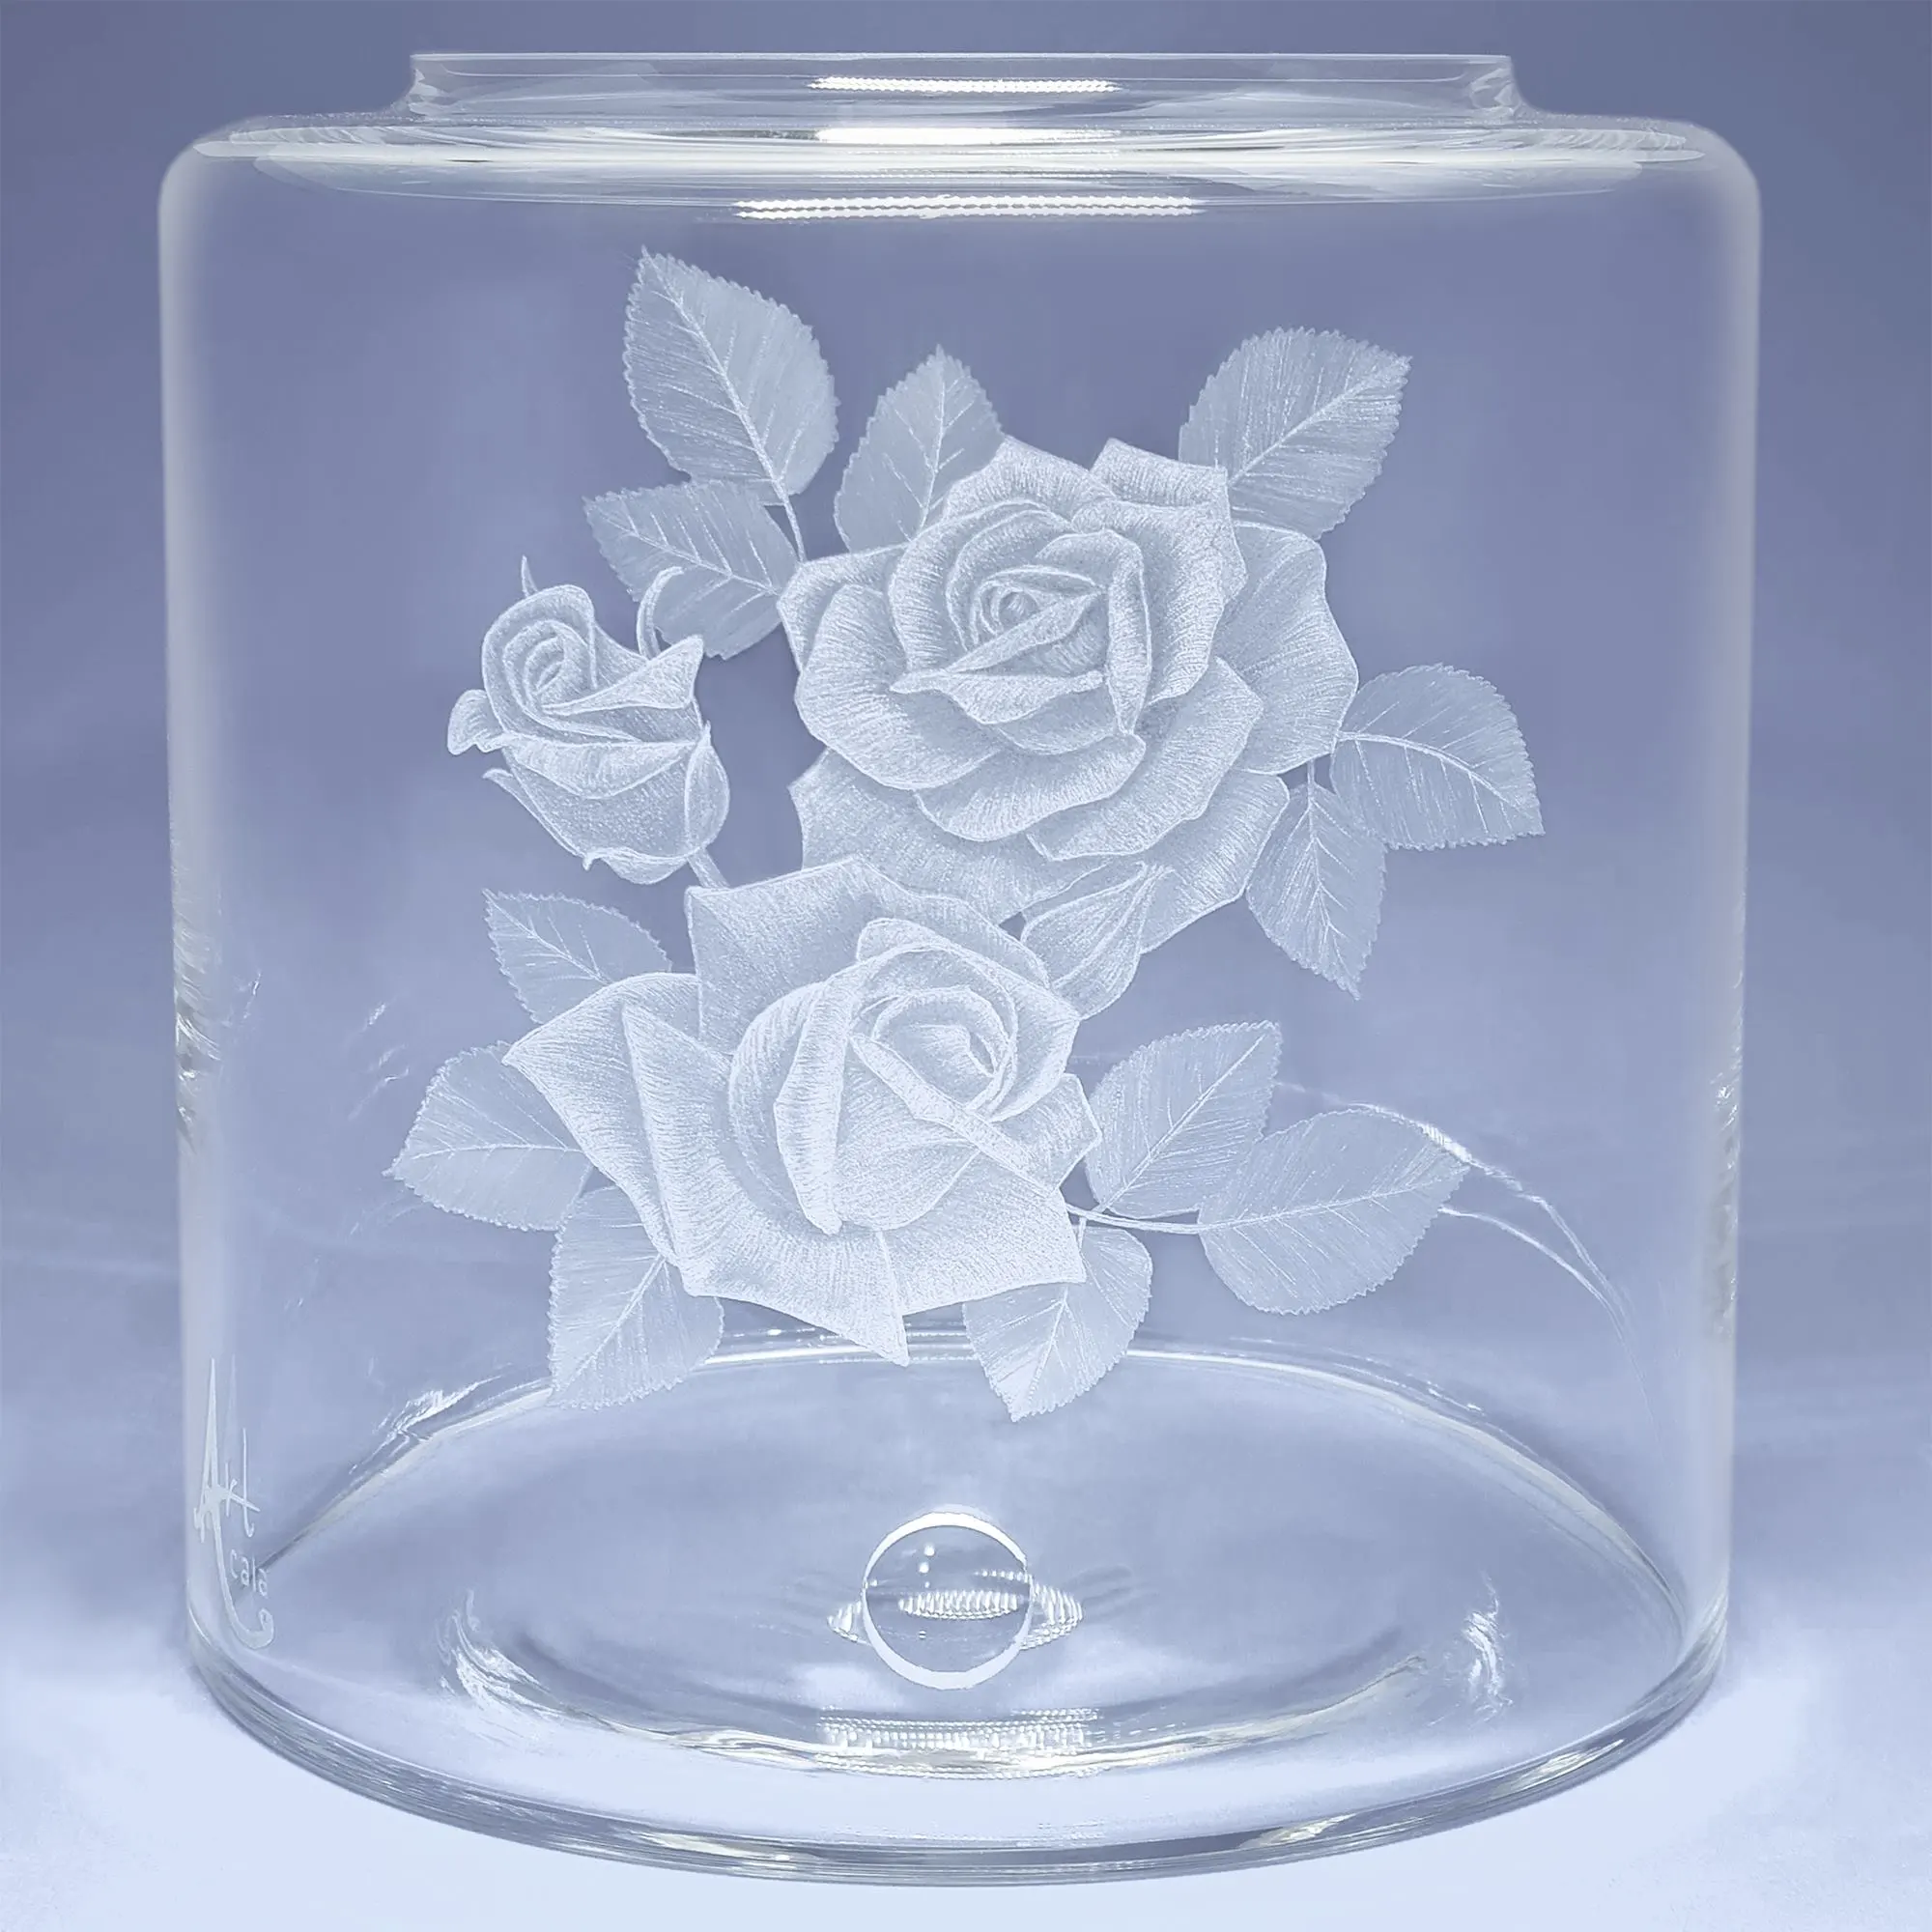 Glas- Vorratstank für einen Acala Wasserfilter Mini mit einer Handgravur. Die Gravur zeigt, auf klarem Glas, 2 aufgeblühte Rosen und eine Knospe. 